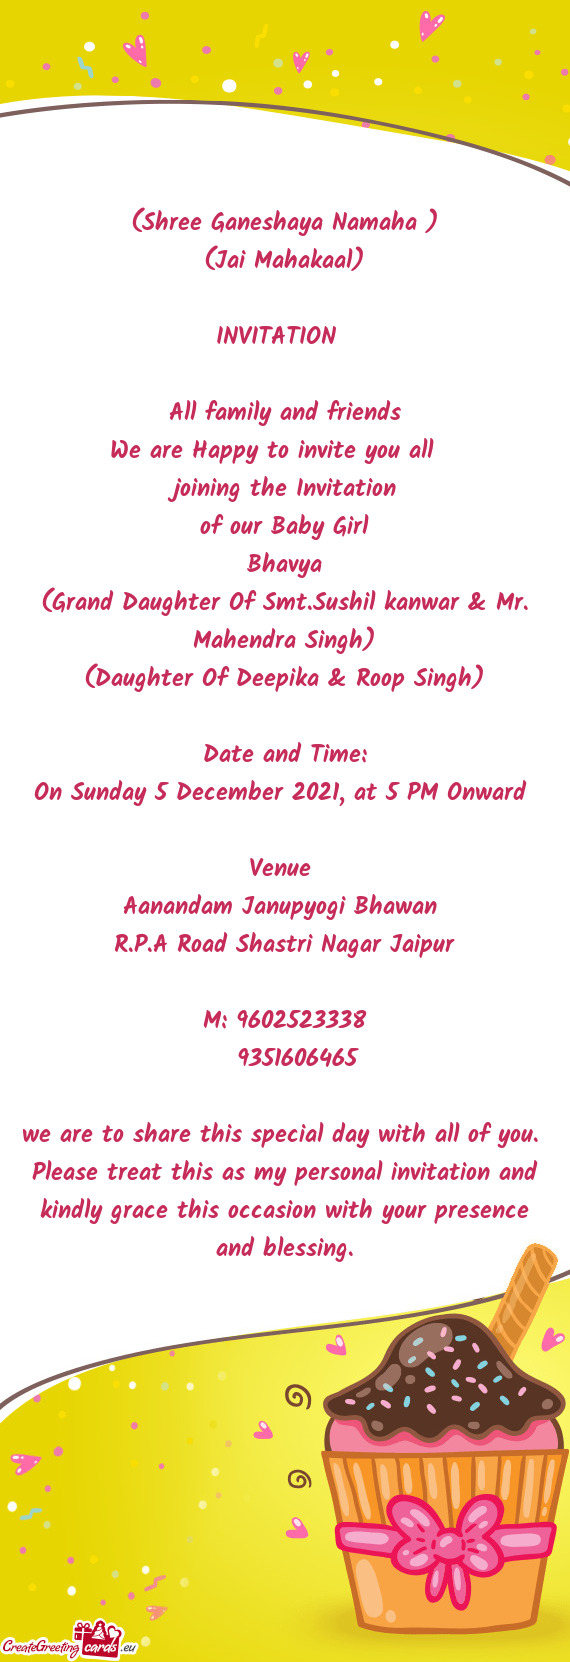 (Shree Ganeshaya Namaha )
 (Jai Mahakaal)
 
 INVITATION 
 
 All family and friends
 We are Happy to